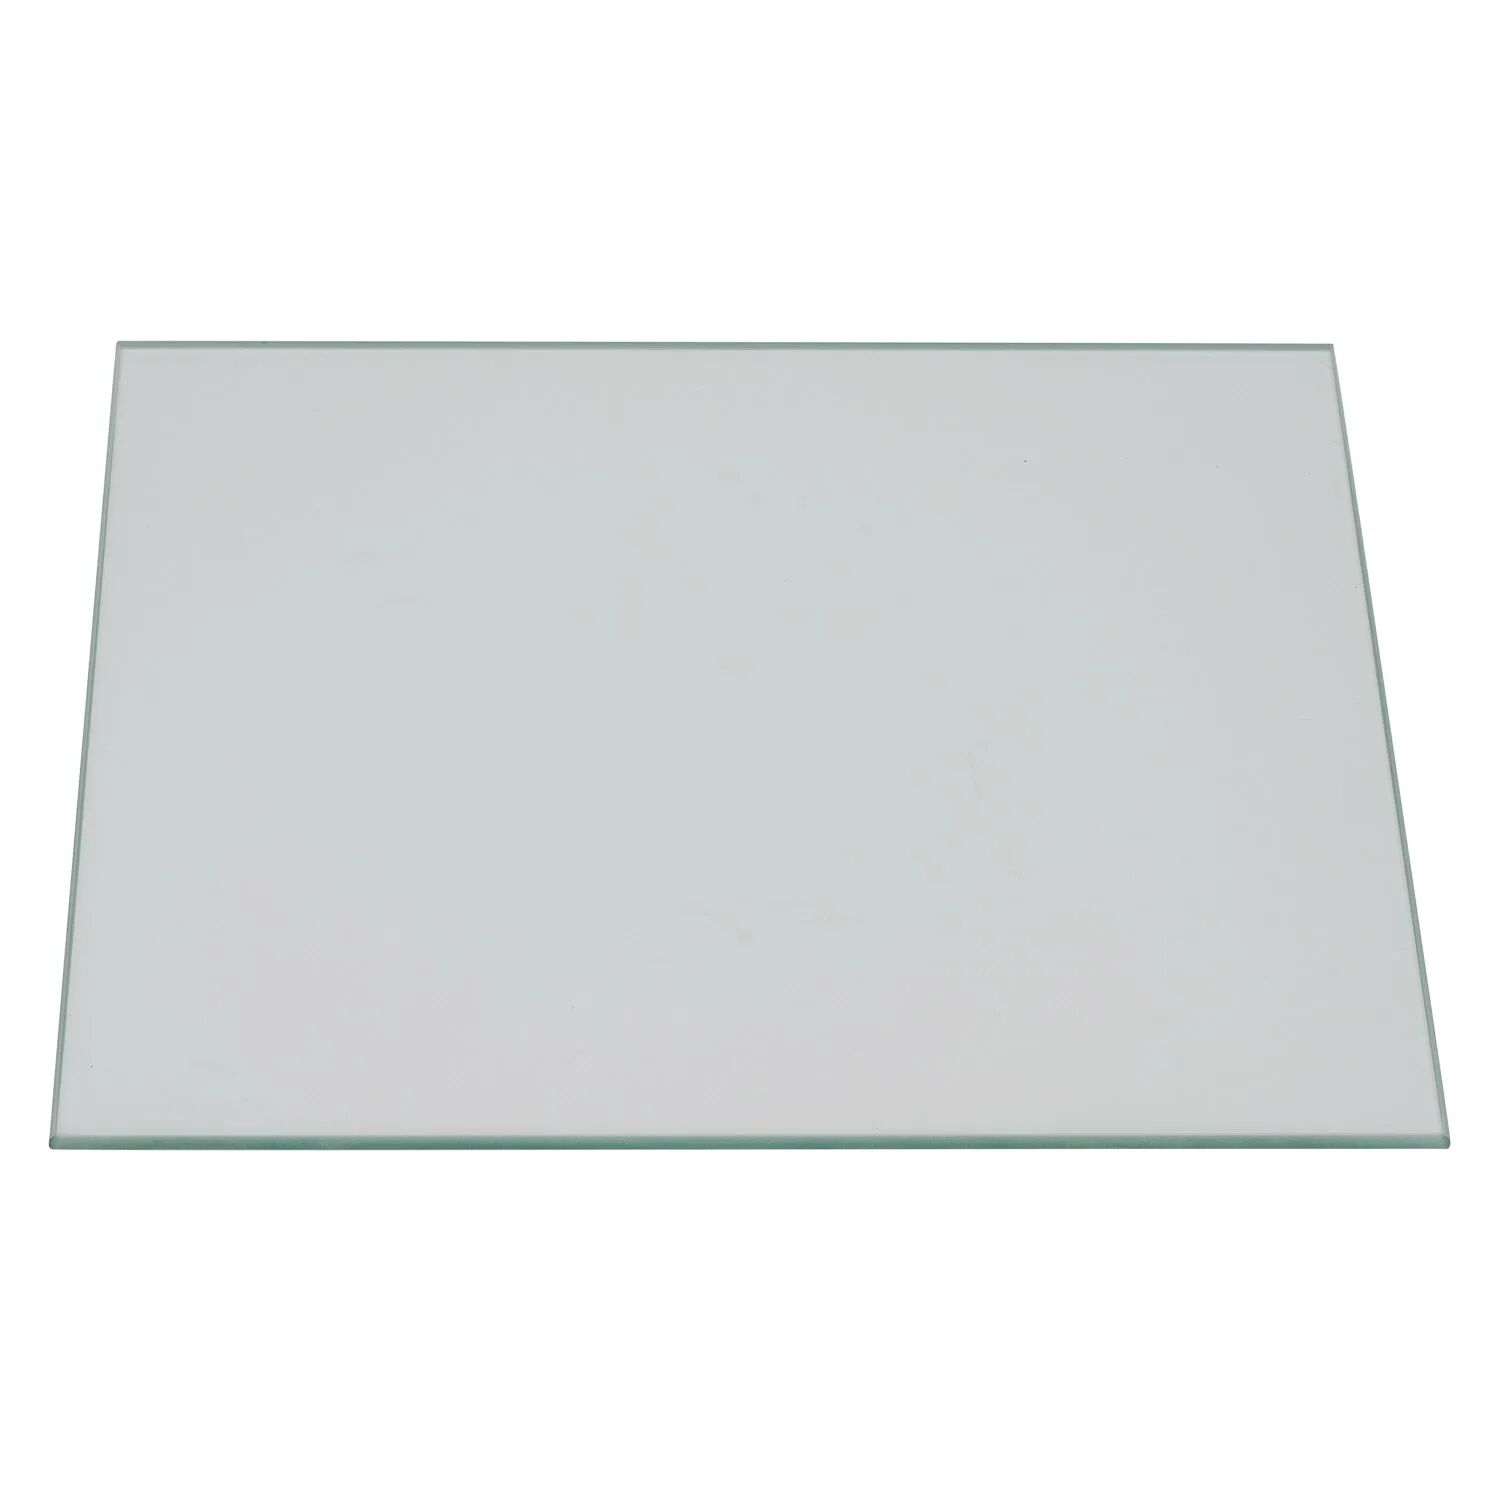 Pelipal Glaseinlegeboden für Schränke 31,2 x 27 cm serienübergreifend passend für verschiedene Schränke  Glasboden-312x270